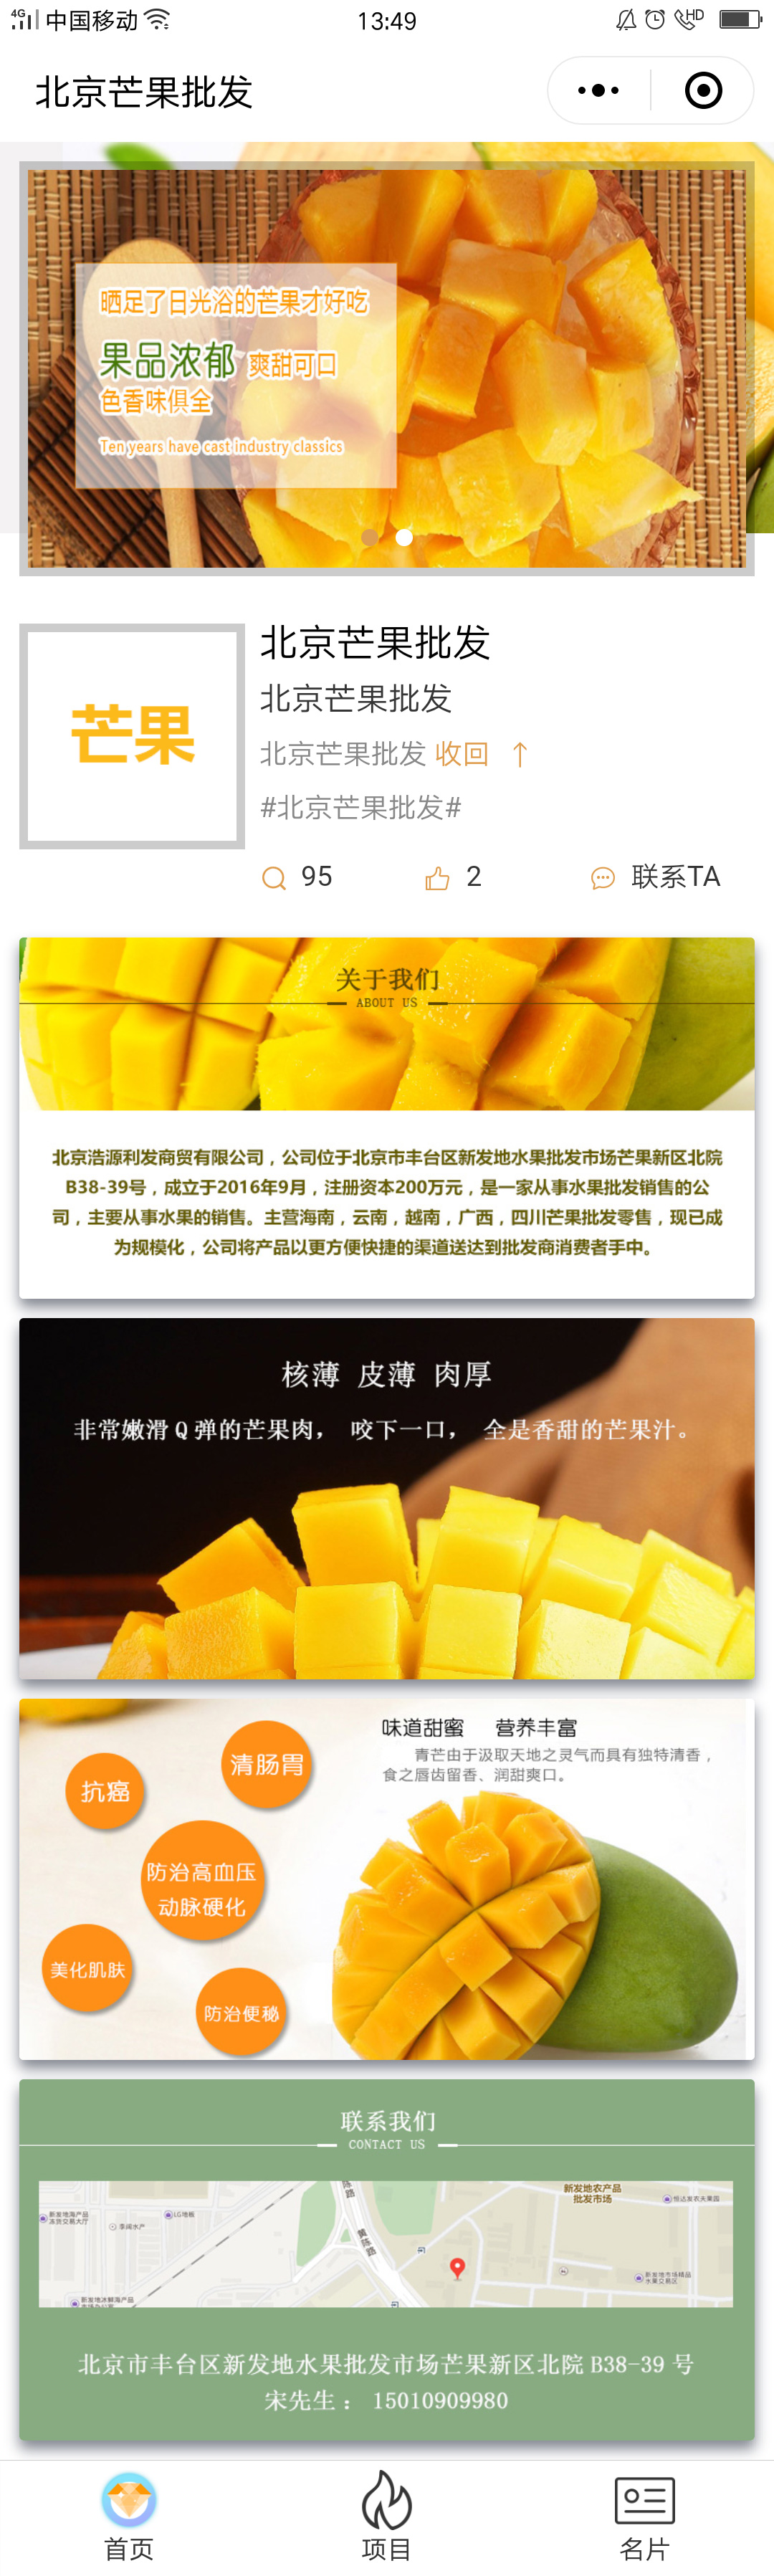 果蔬黄色北京-北京芒果批发商标小程序高级版高级版.jpg